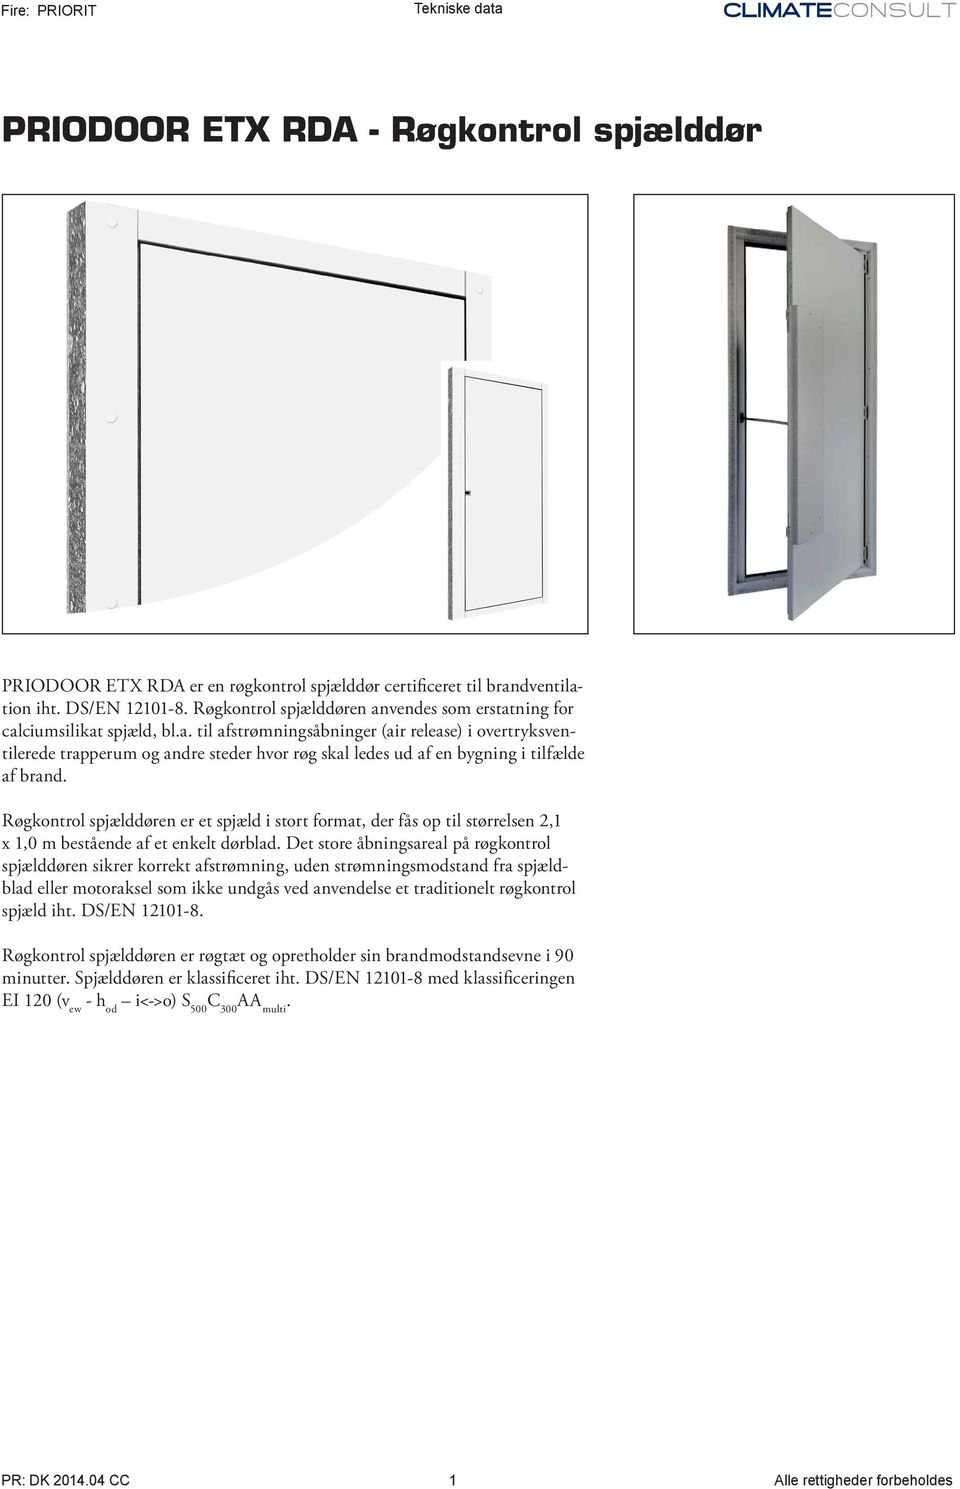 Røgkontrol spjælddøren er et spjæld i stort format, der fås op til størrelsen 2,1 x 1,0 m bestående af et enkelt dørblad.